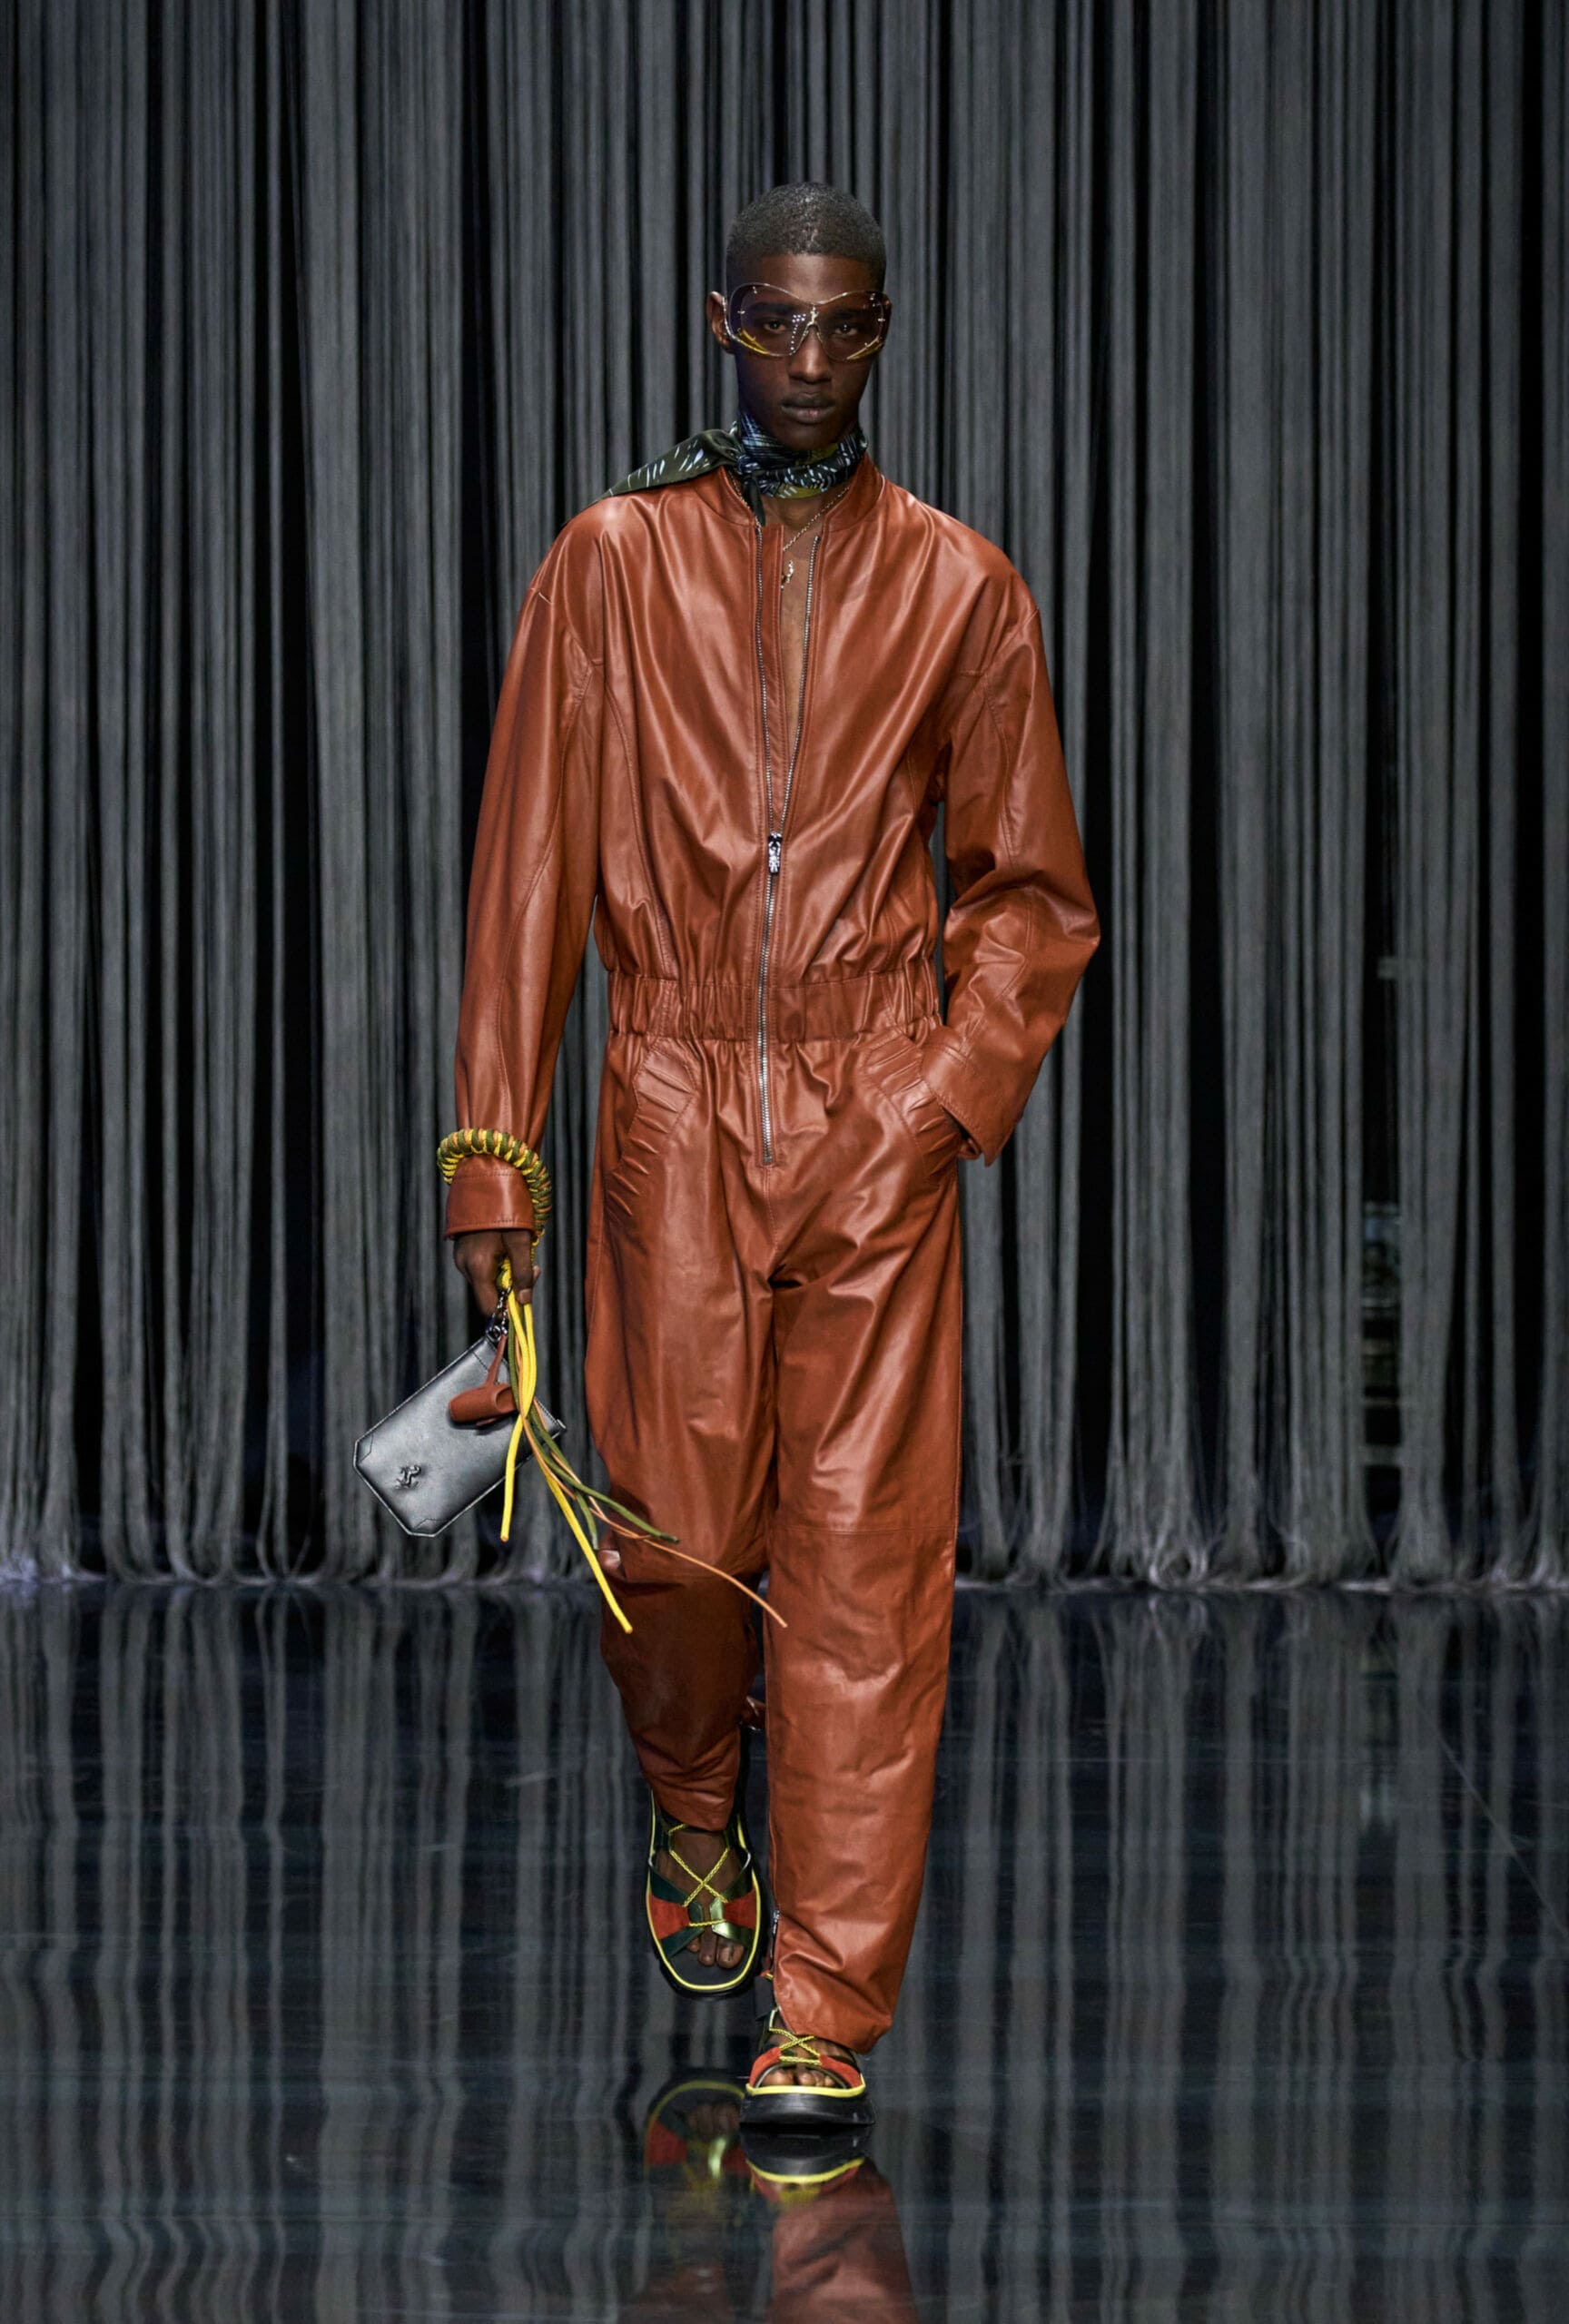 Ein männliches Model läuft in einem braunen Lederoverall über einen Laufsteg